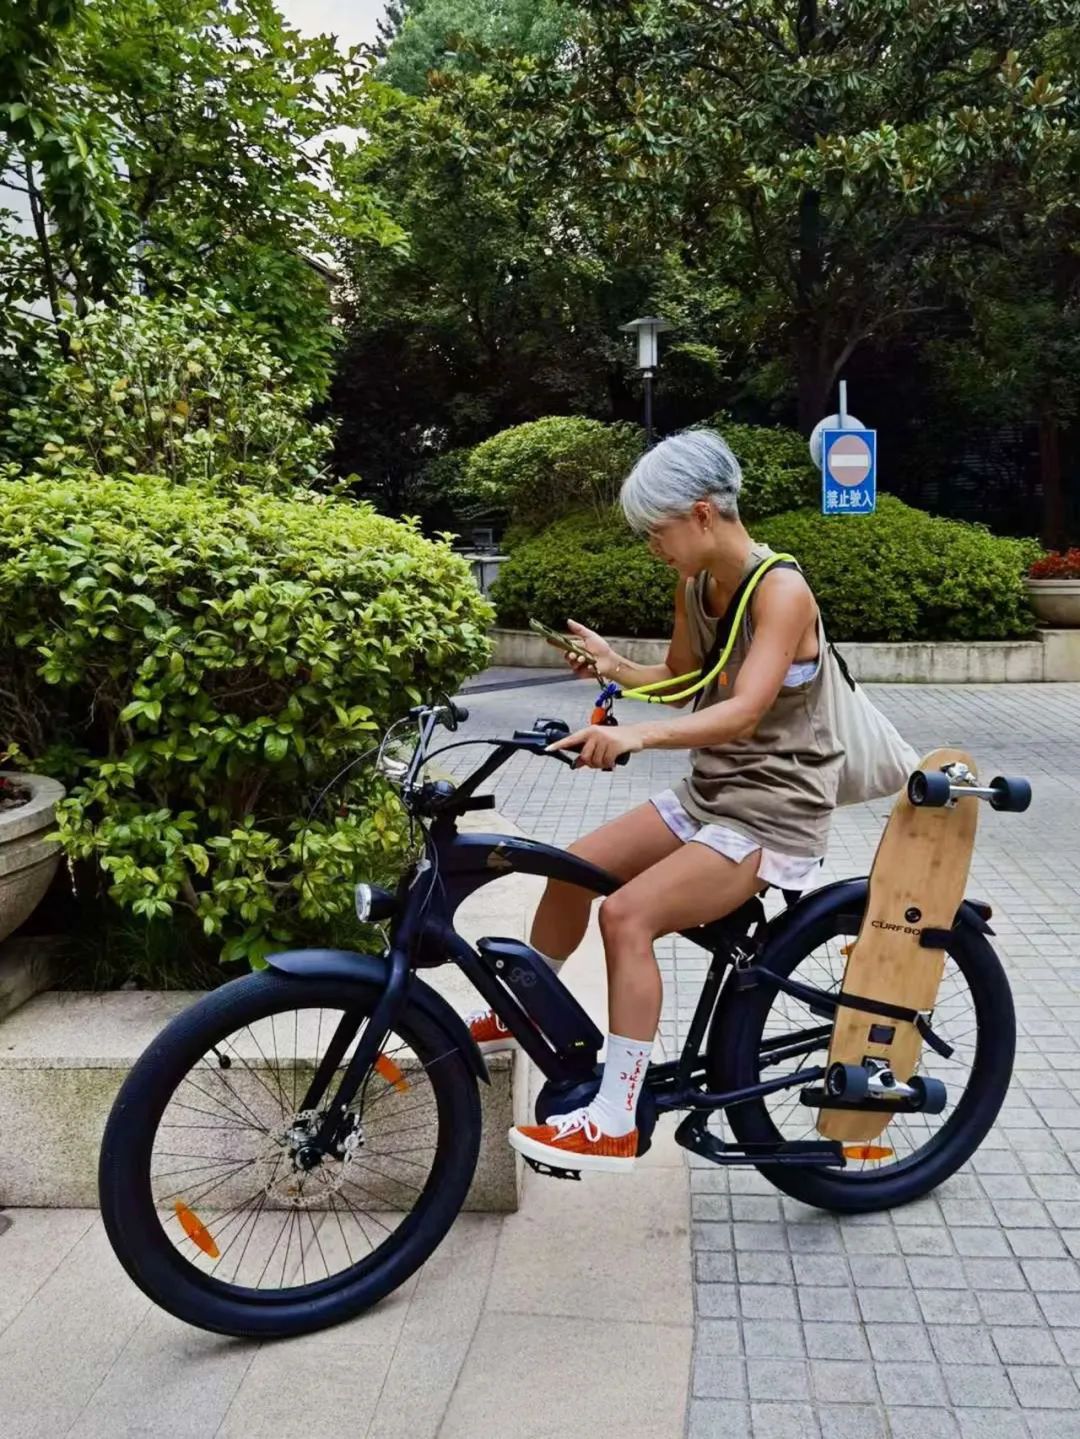 Trung Quốc: Sống giữa đại dịch, chơi xe đạp trở thành xu thế ở thành phố hiện đại - Ảnh 7.